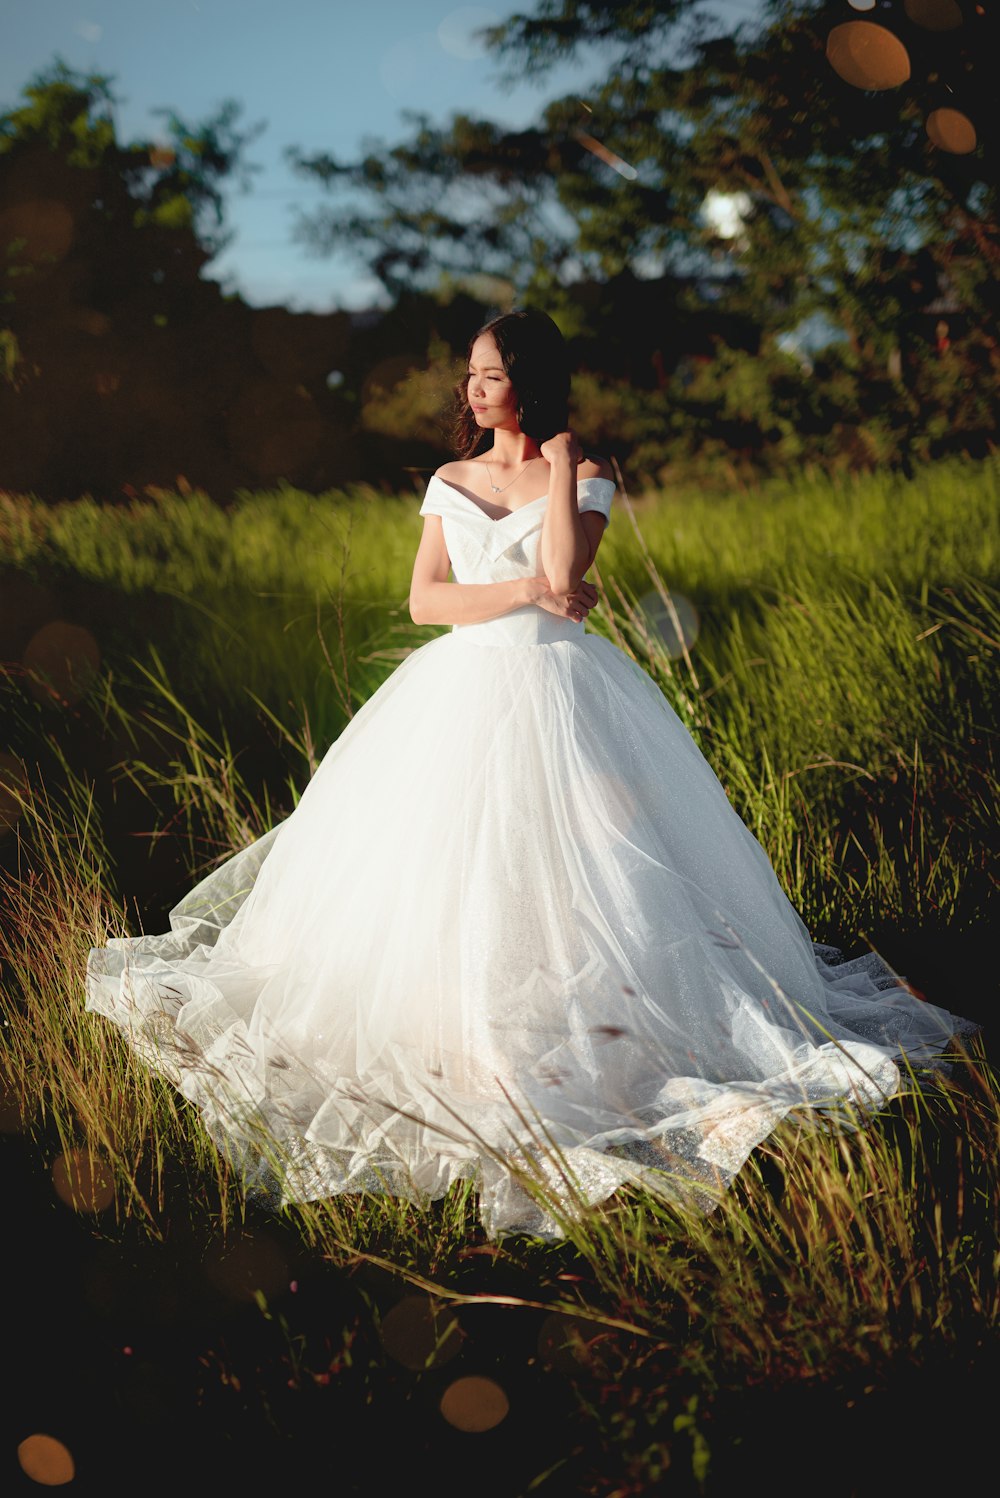 Frau in weißem Kleid tagsüber auf grünem Rasen stehend